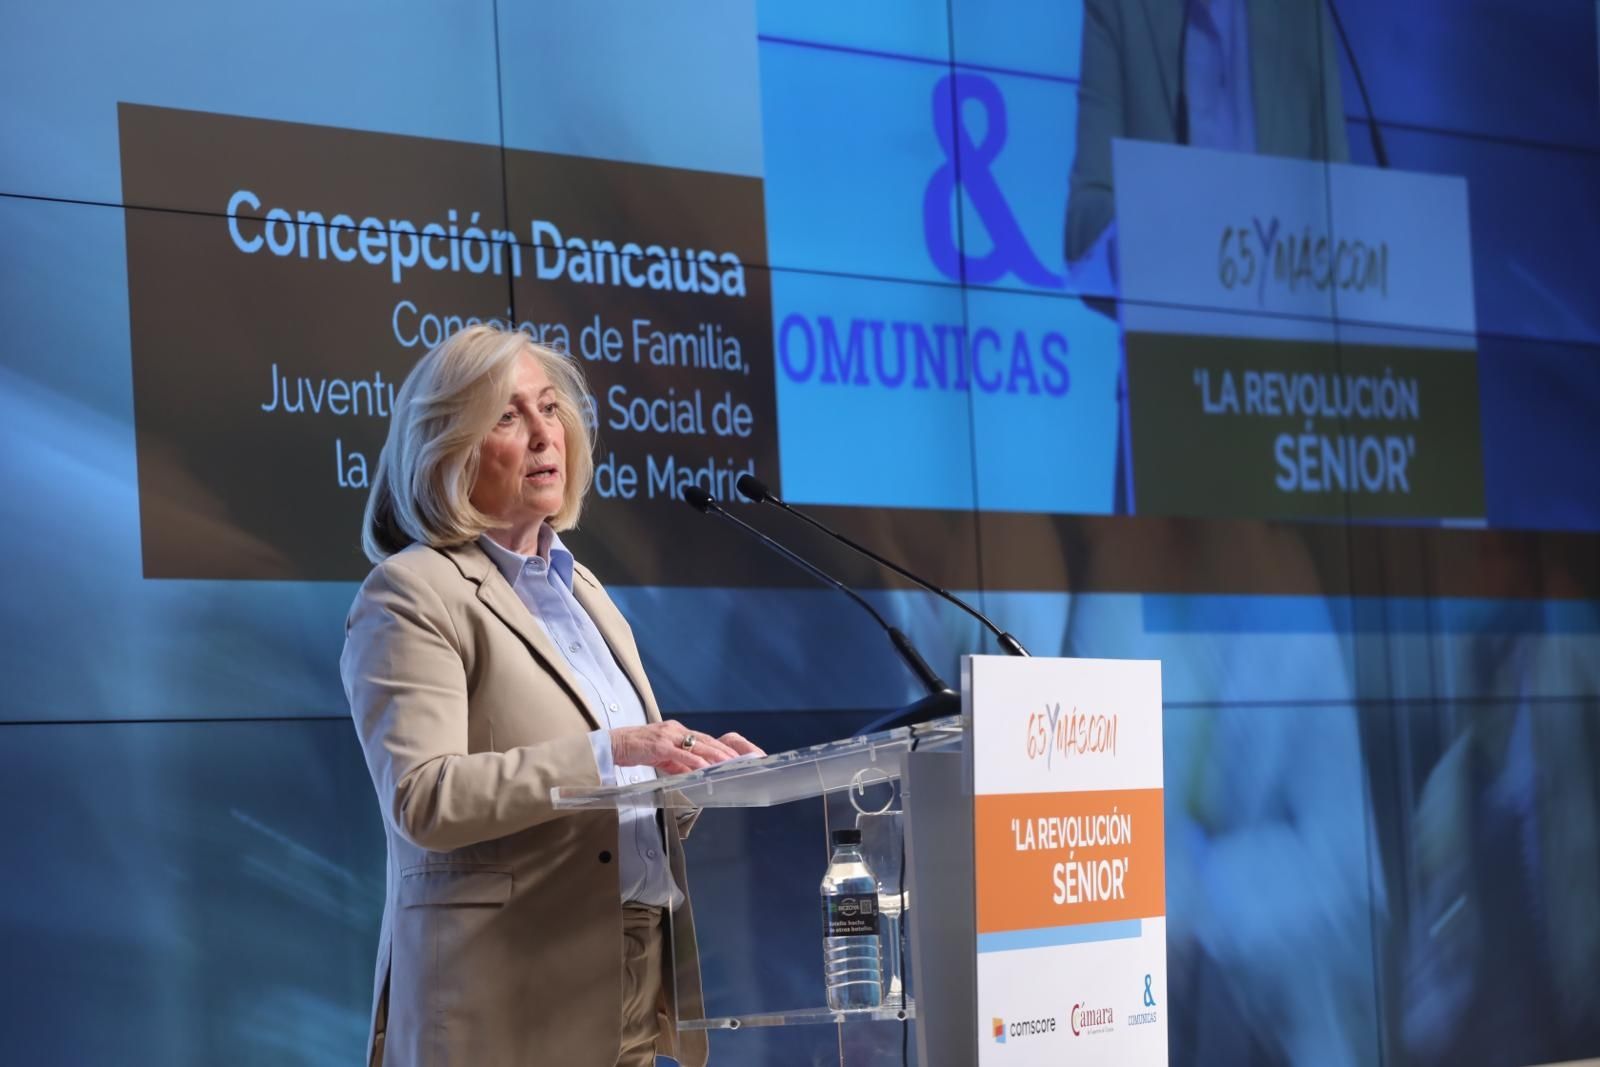 Concepción Dancausa: "La soledad no deseada representa un empobrecimiento social y económico"